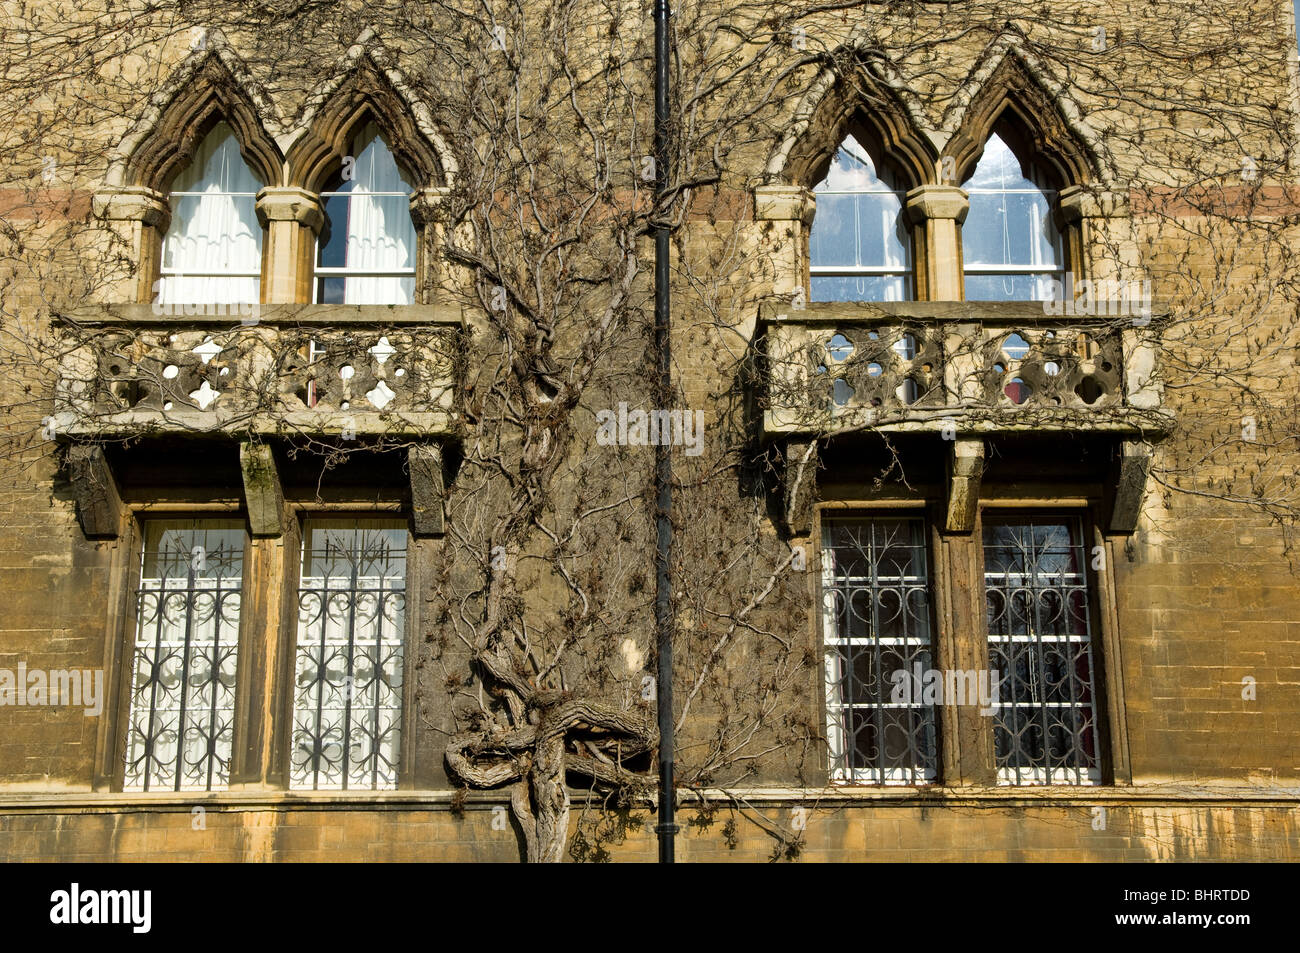 Le style gothique de l'édifice windows Meadow au Christ Church College, Oxford University. Banque D'Images